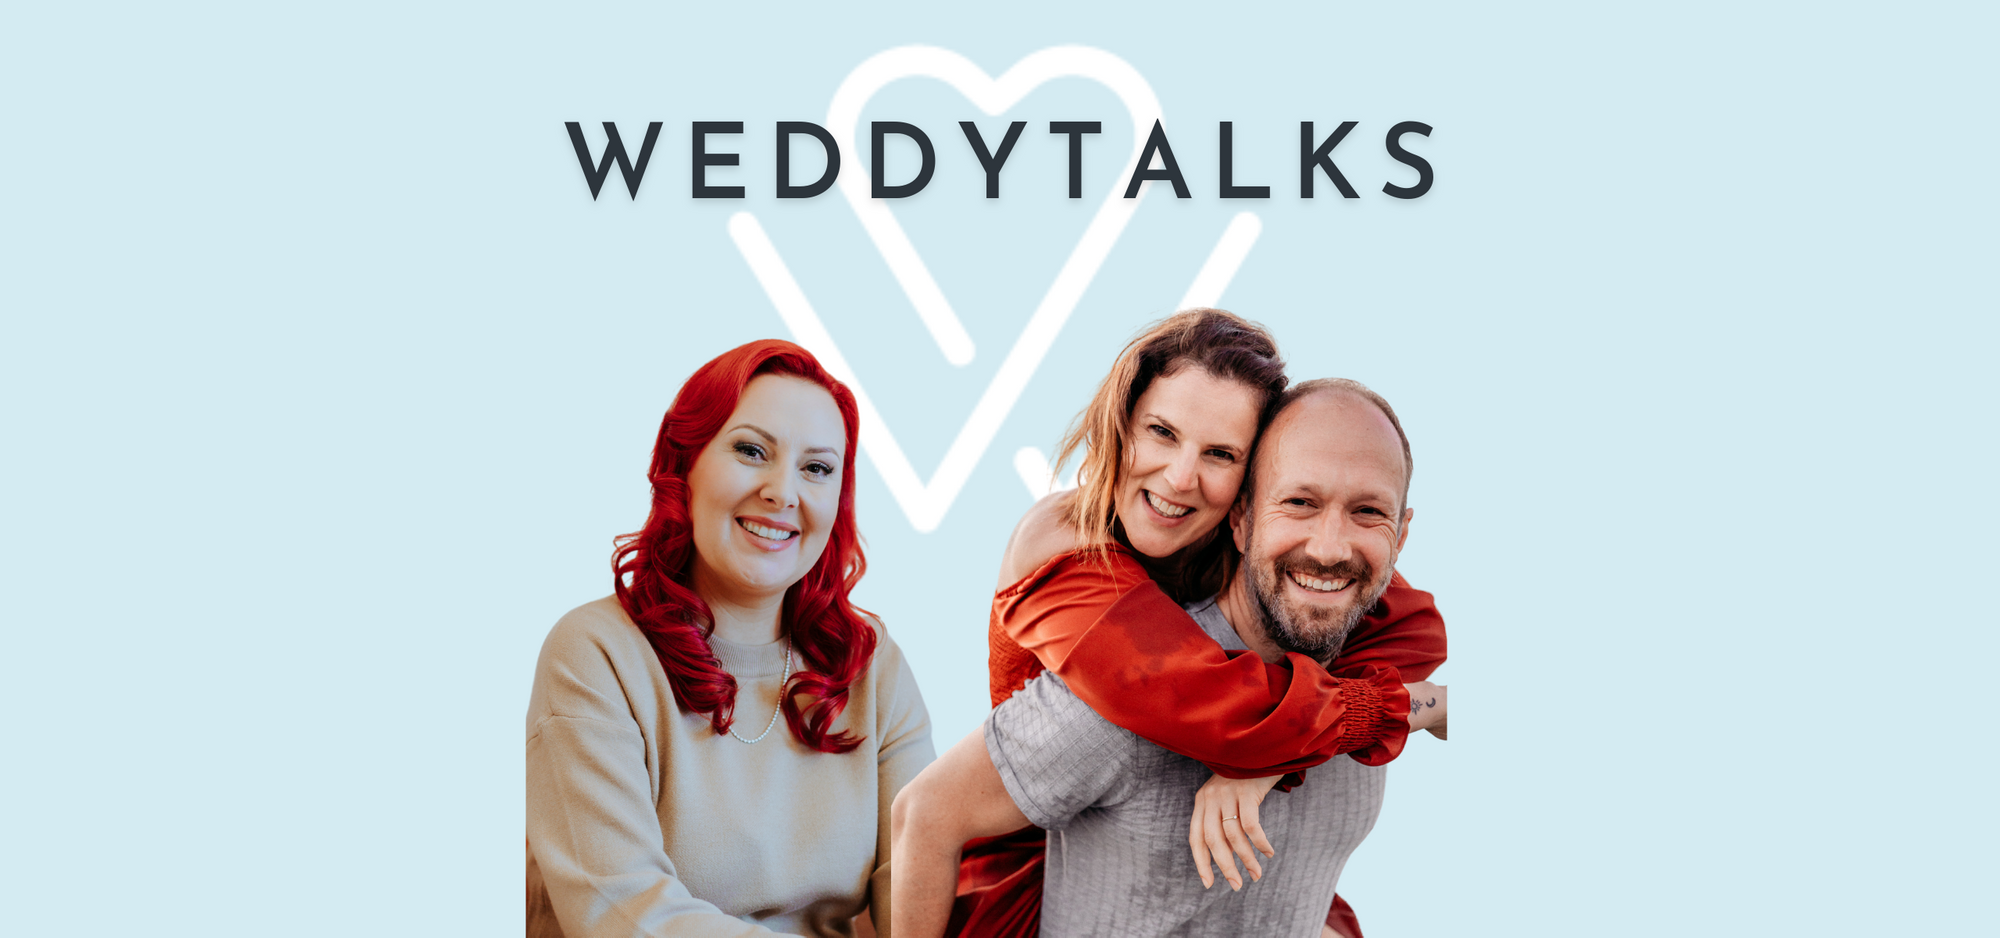 Das Weddingytalks-Logo mit zwei Menschen, die sich umarmen.